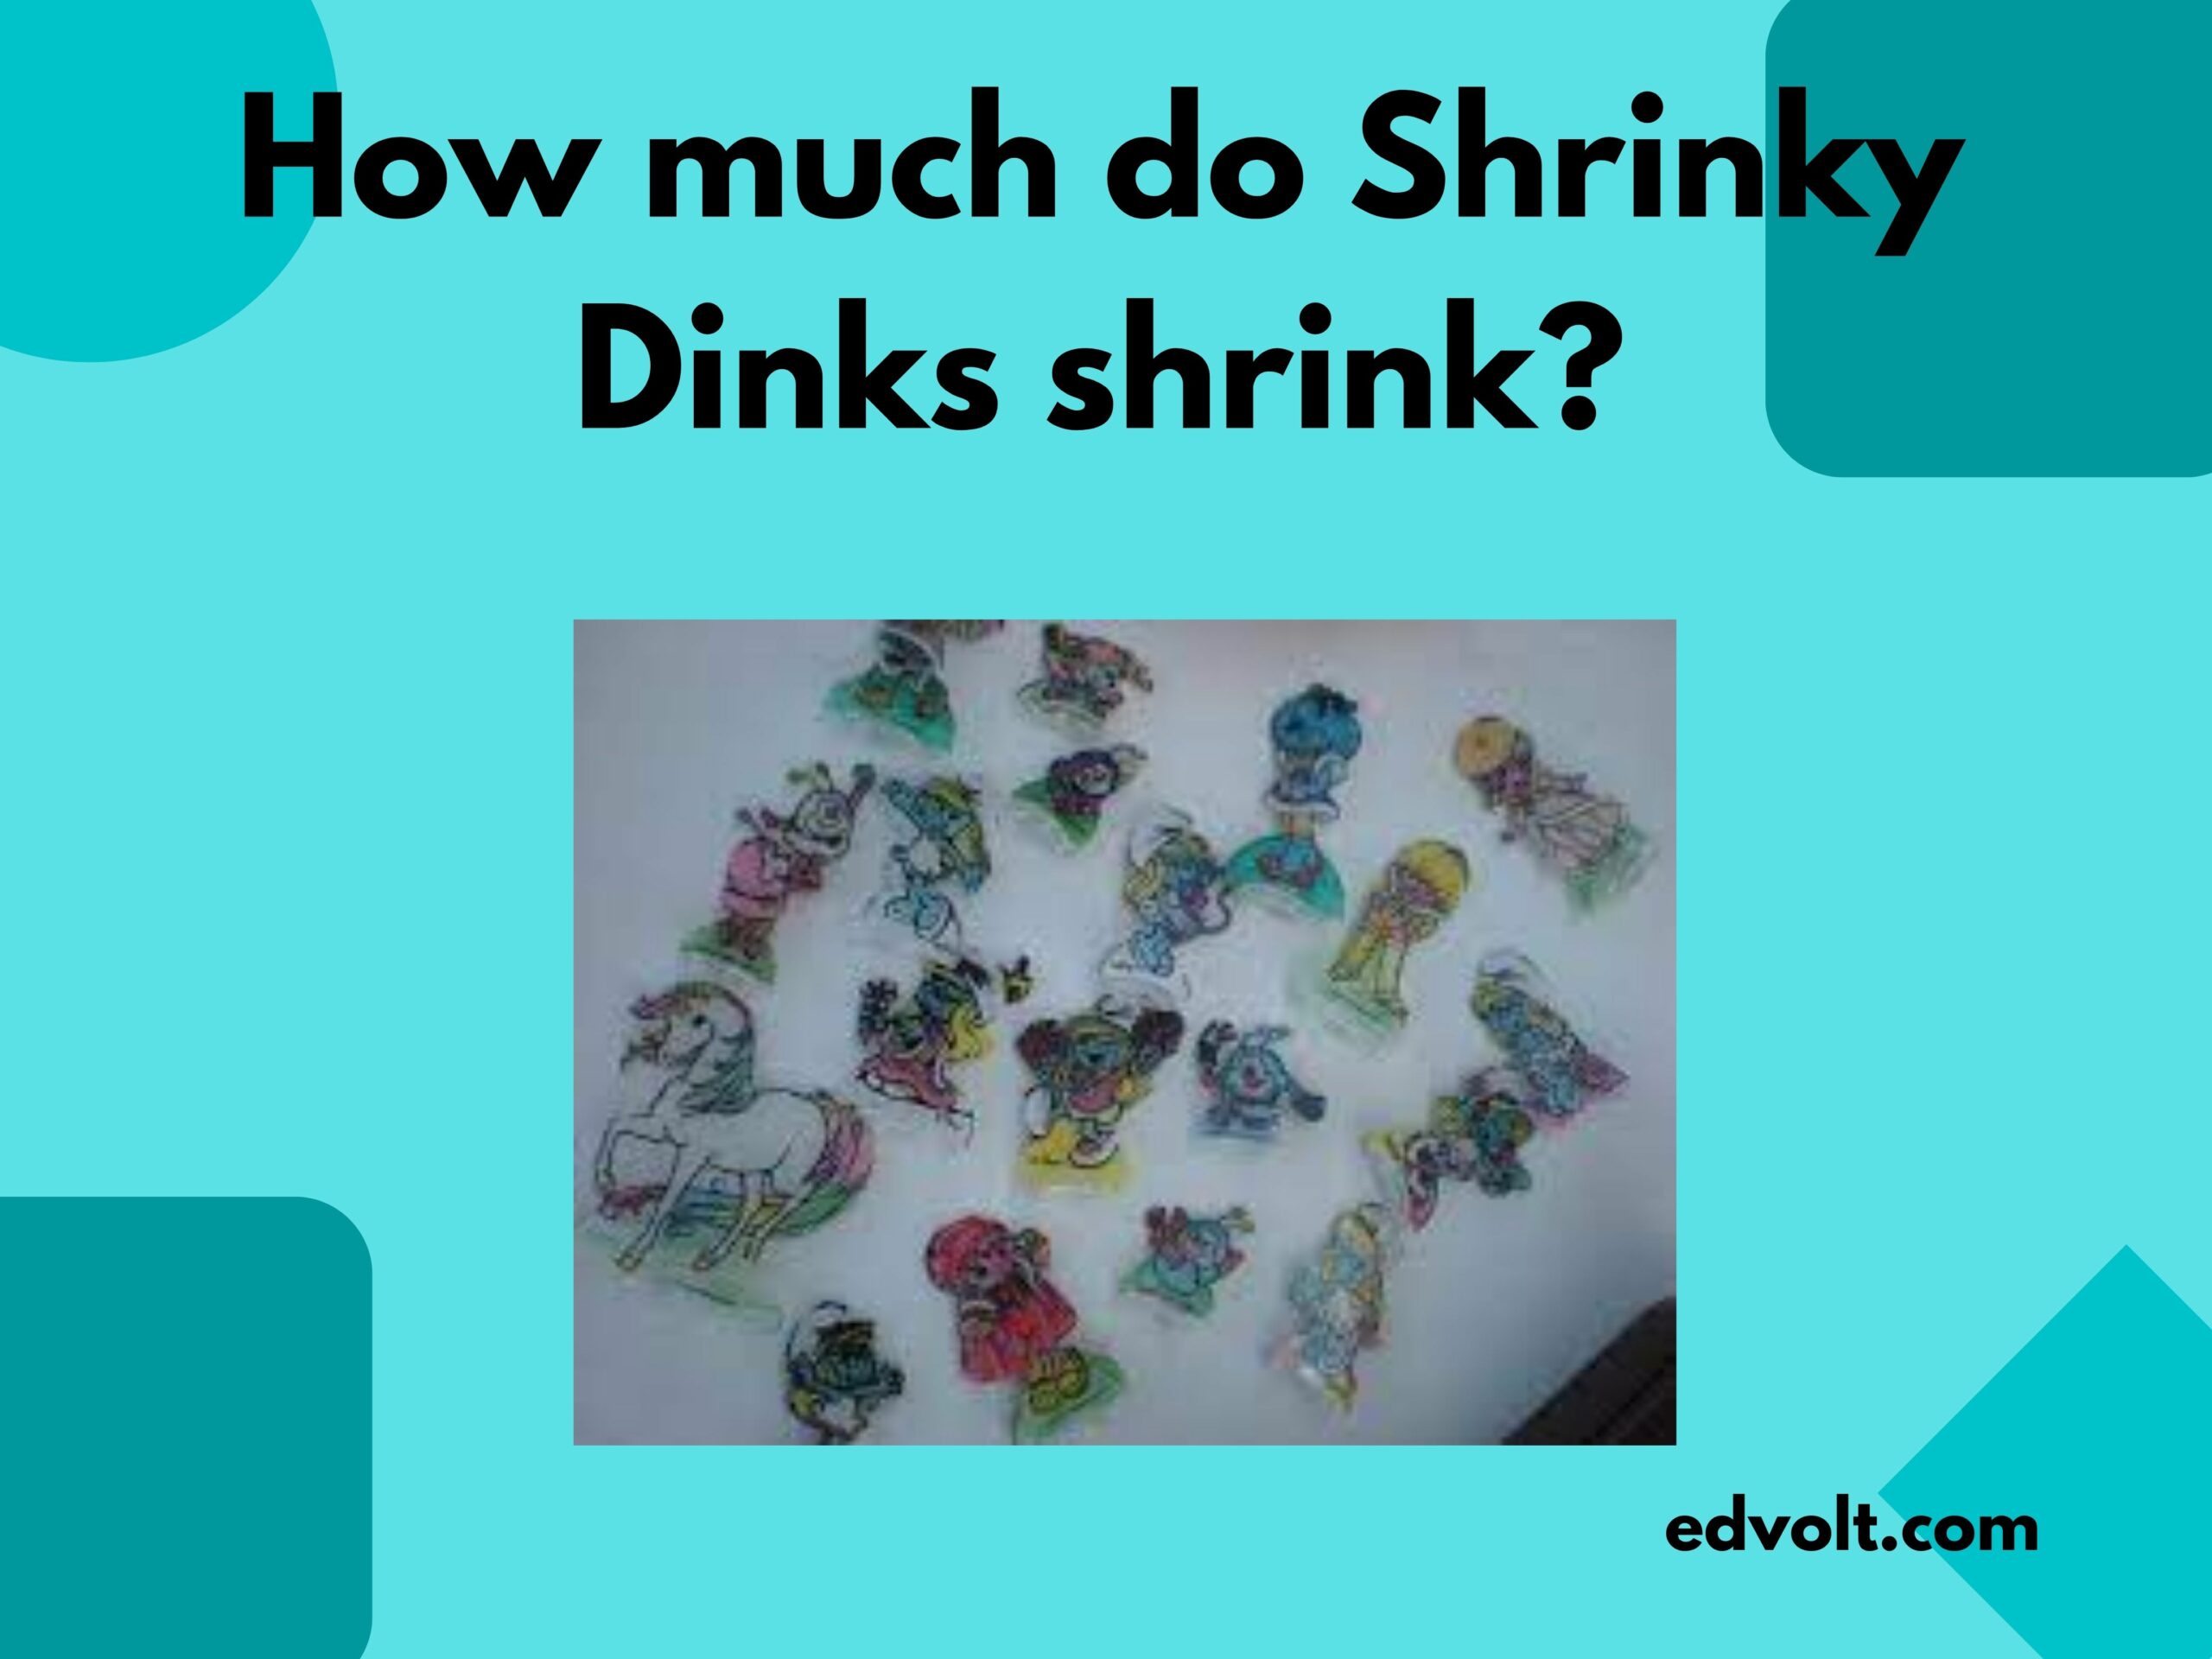 How much do Shrinky Dinks shrink?